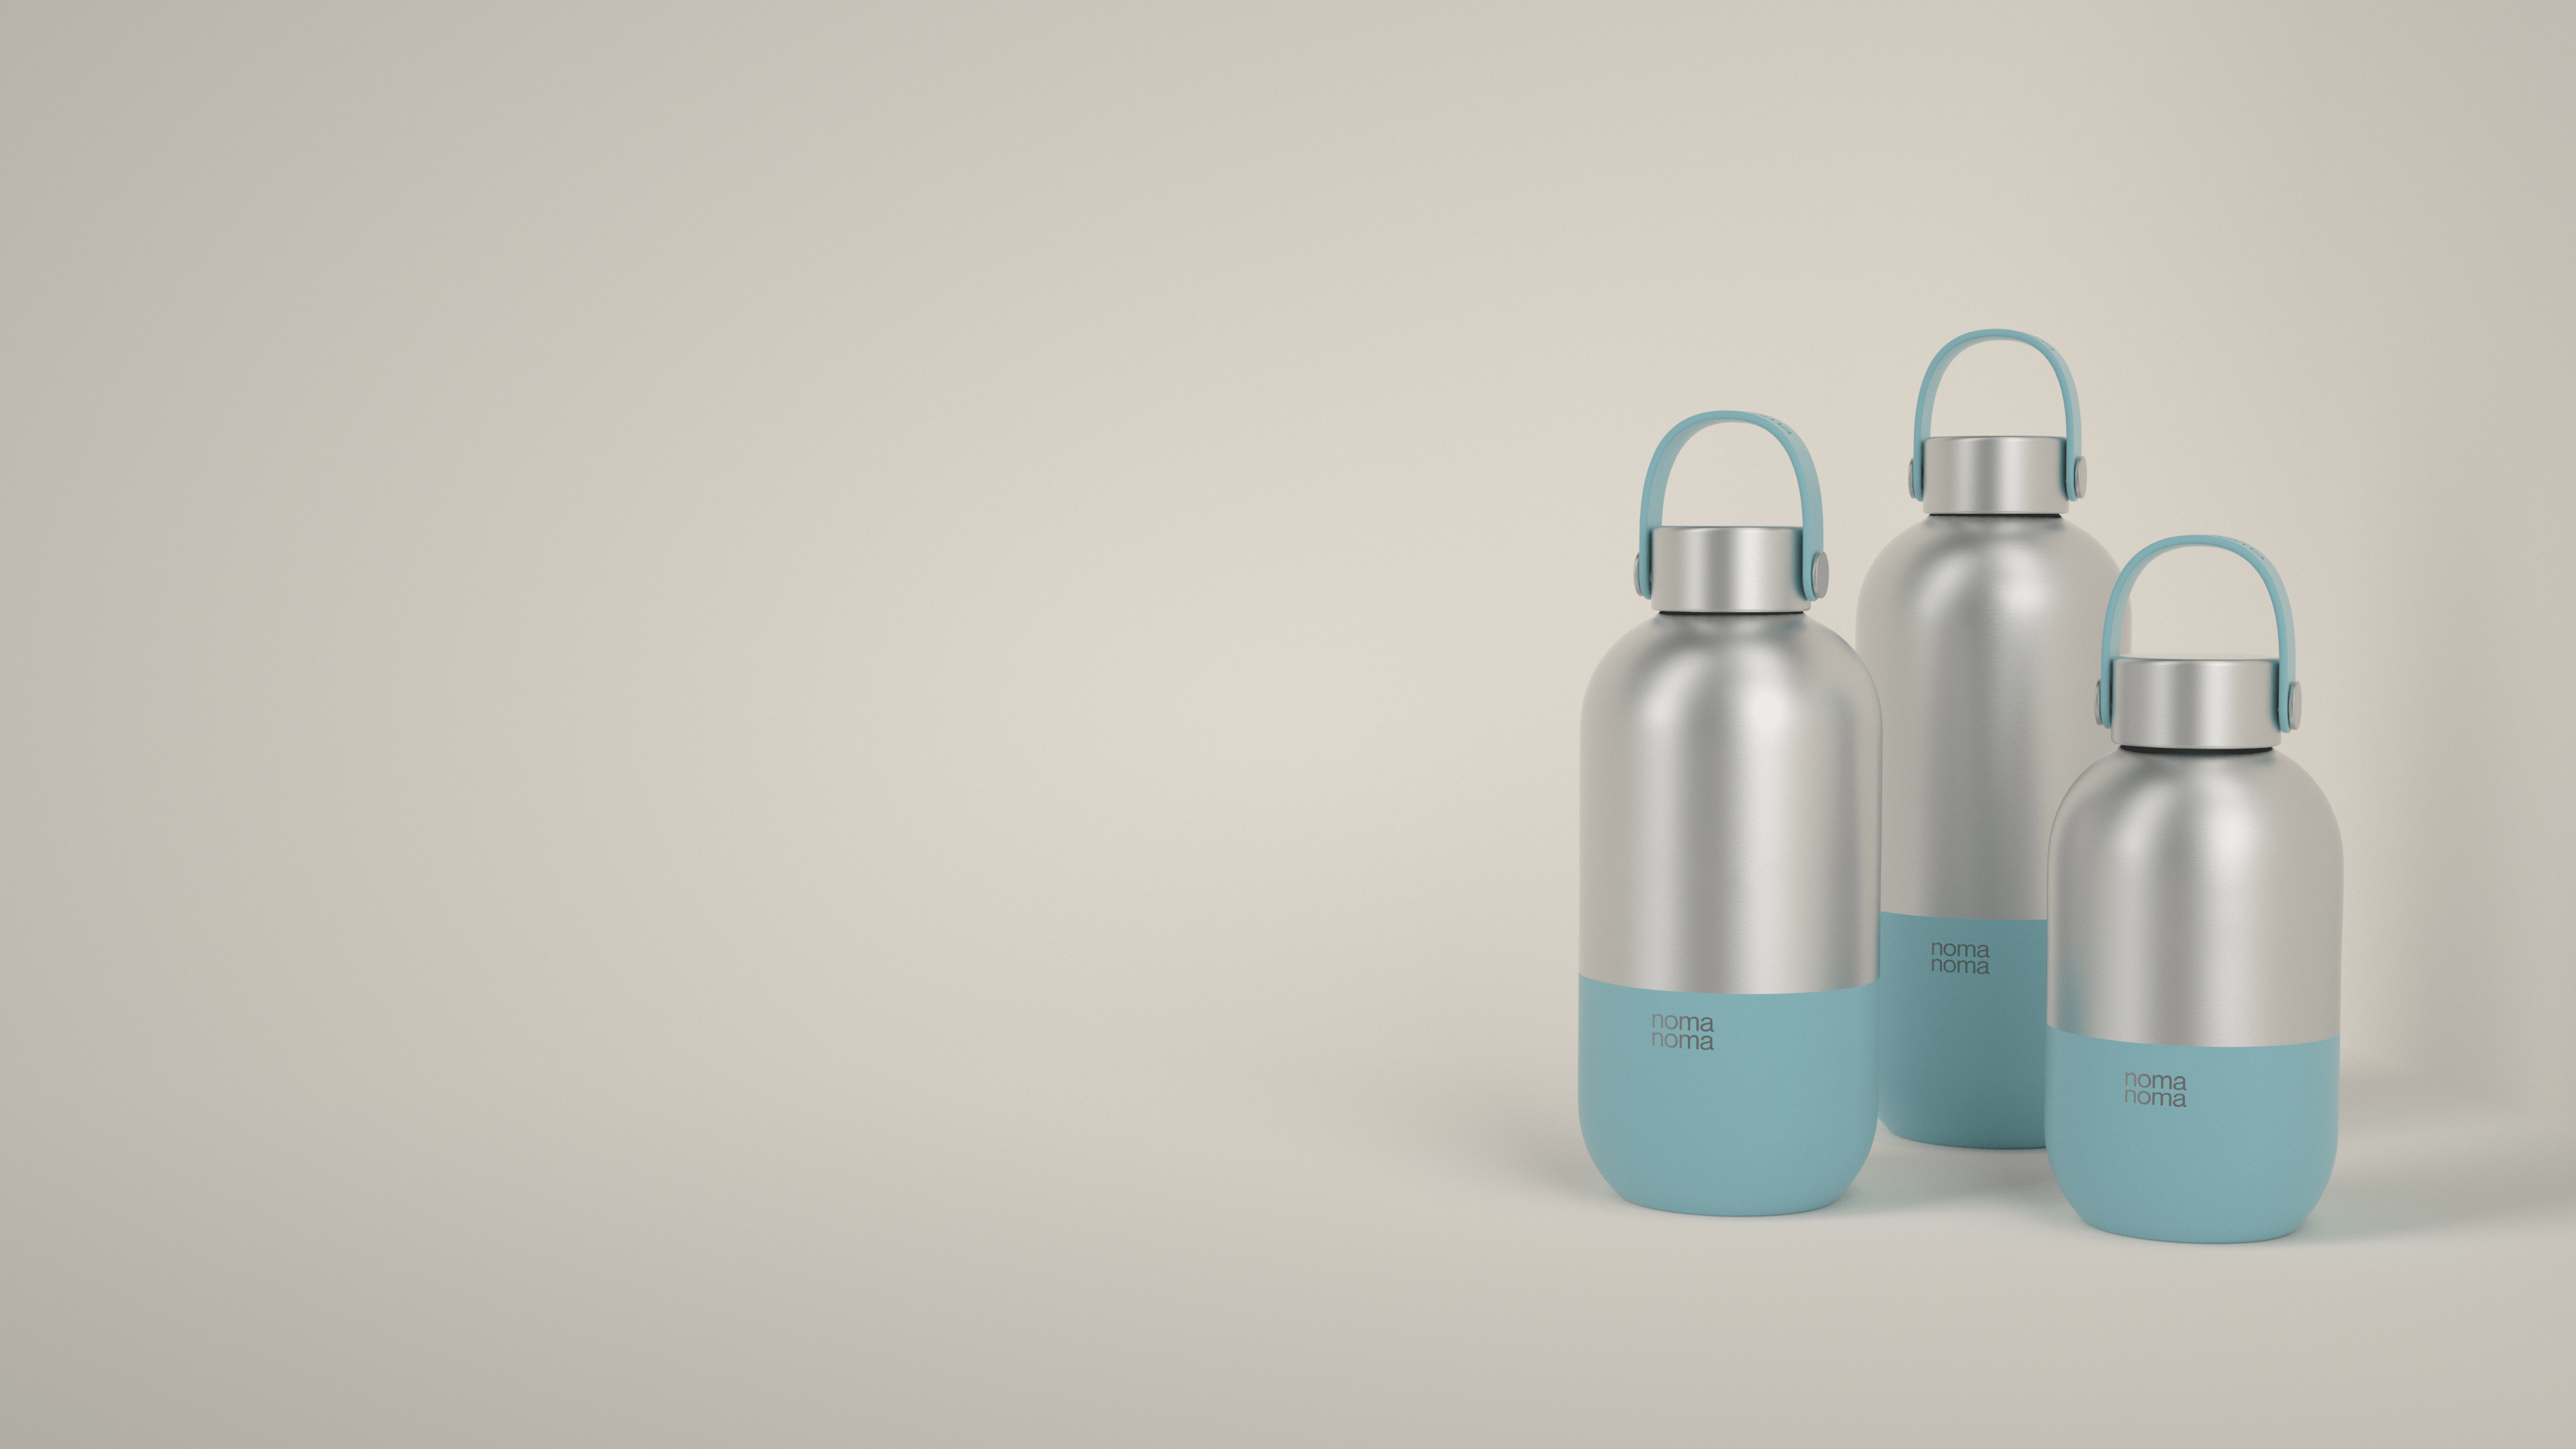 Die hellblaue Trinkflasche von noma noma gibt es in drei praktischen Größen.